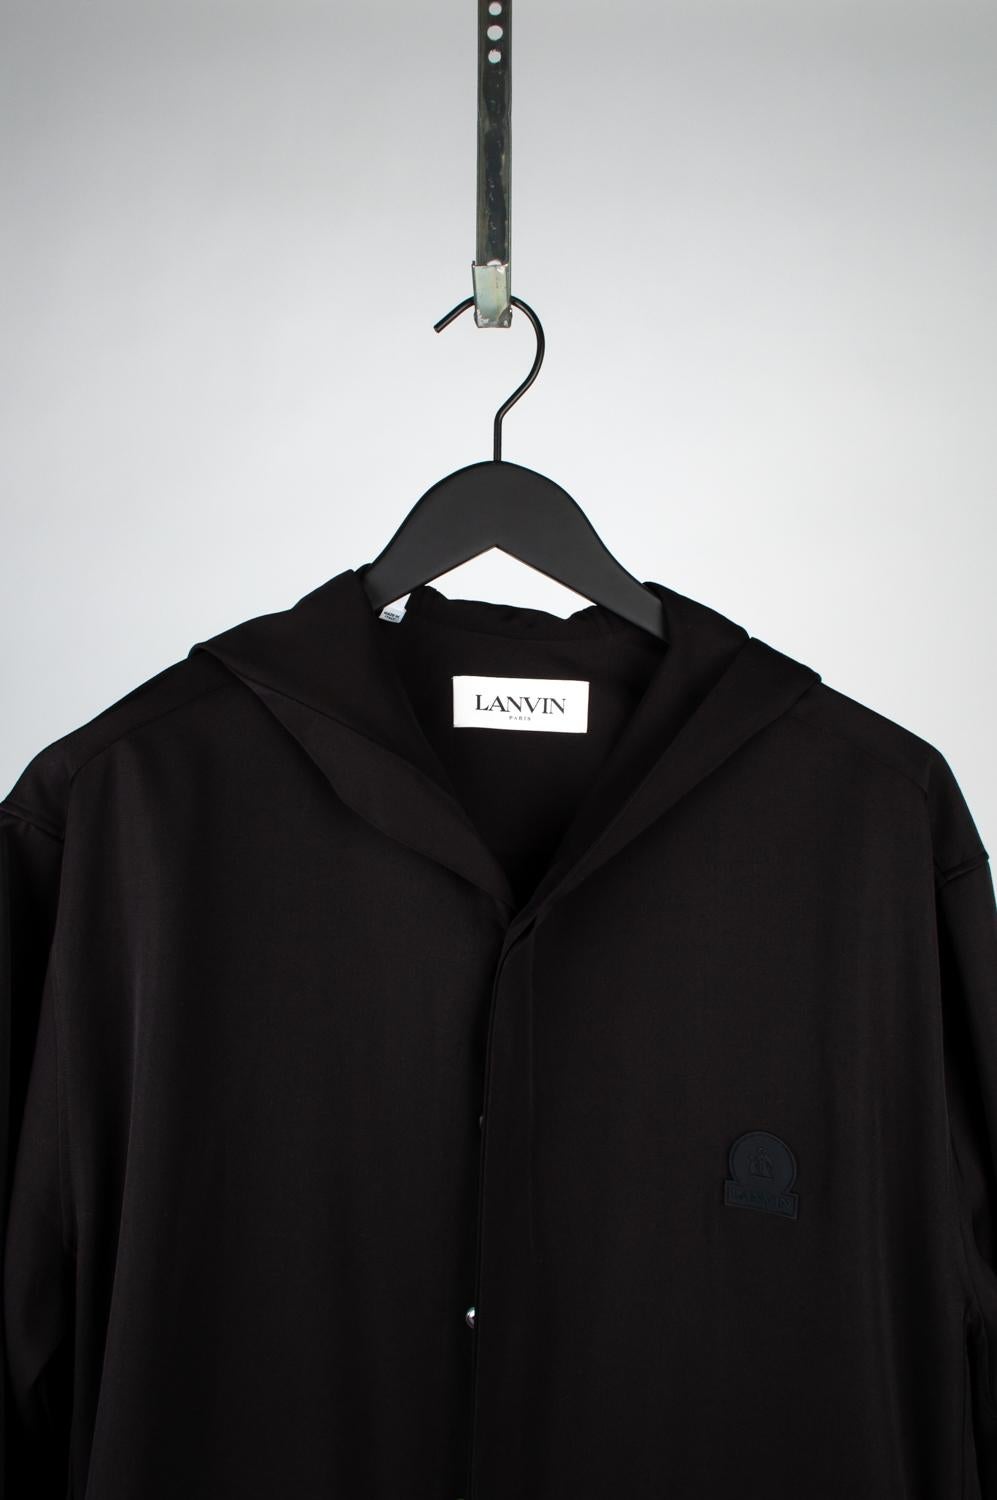 100% echte Lanvin leichte Jacke mit Kapuze, S551-1
Farbe: Schwarz
(Eine tatsächliche Farbe kann ein wenig variieren aufgrund individueller Computer-Bildschirm Interpretation)
MATERIAL: 100% Wolle
Tag Größe: 41/16 läuft groß
Diese Jacke ist von